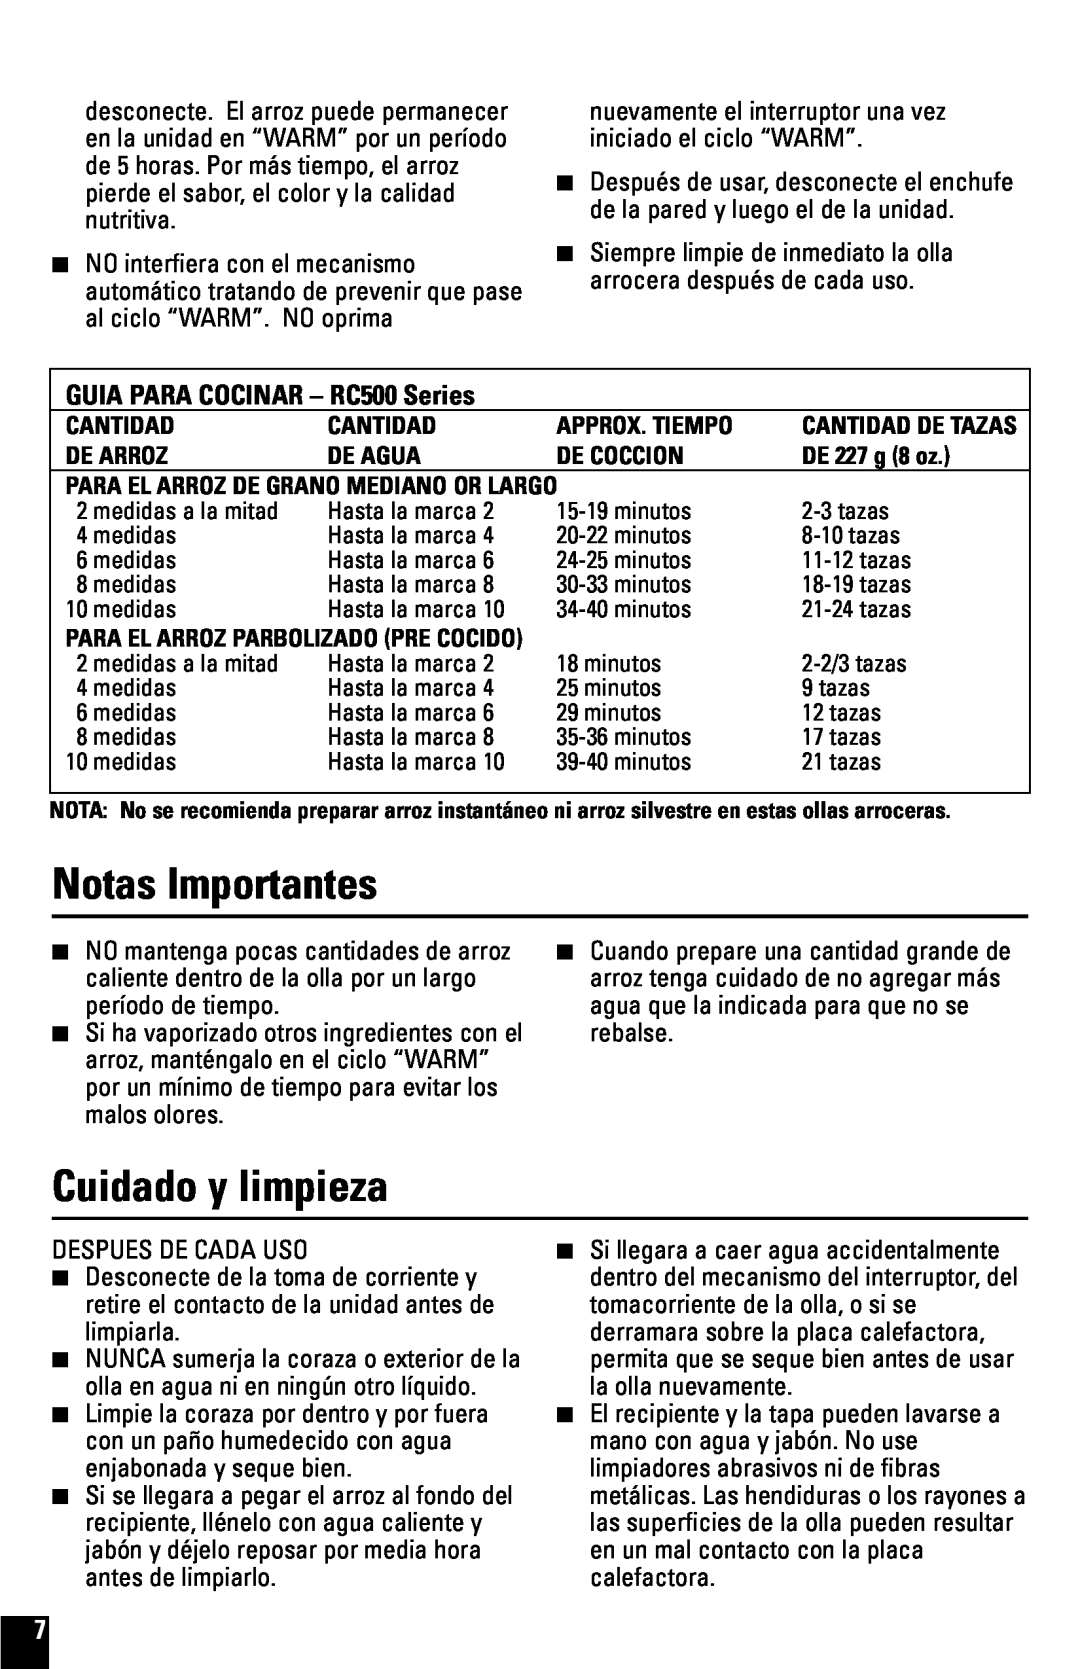 Black & Decker RC600 manual Notas Importantes, Cuidado y limpieza, GUIA PARA COCINAR - RC500 Series 